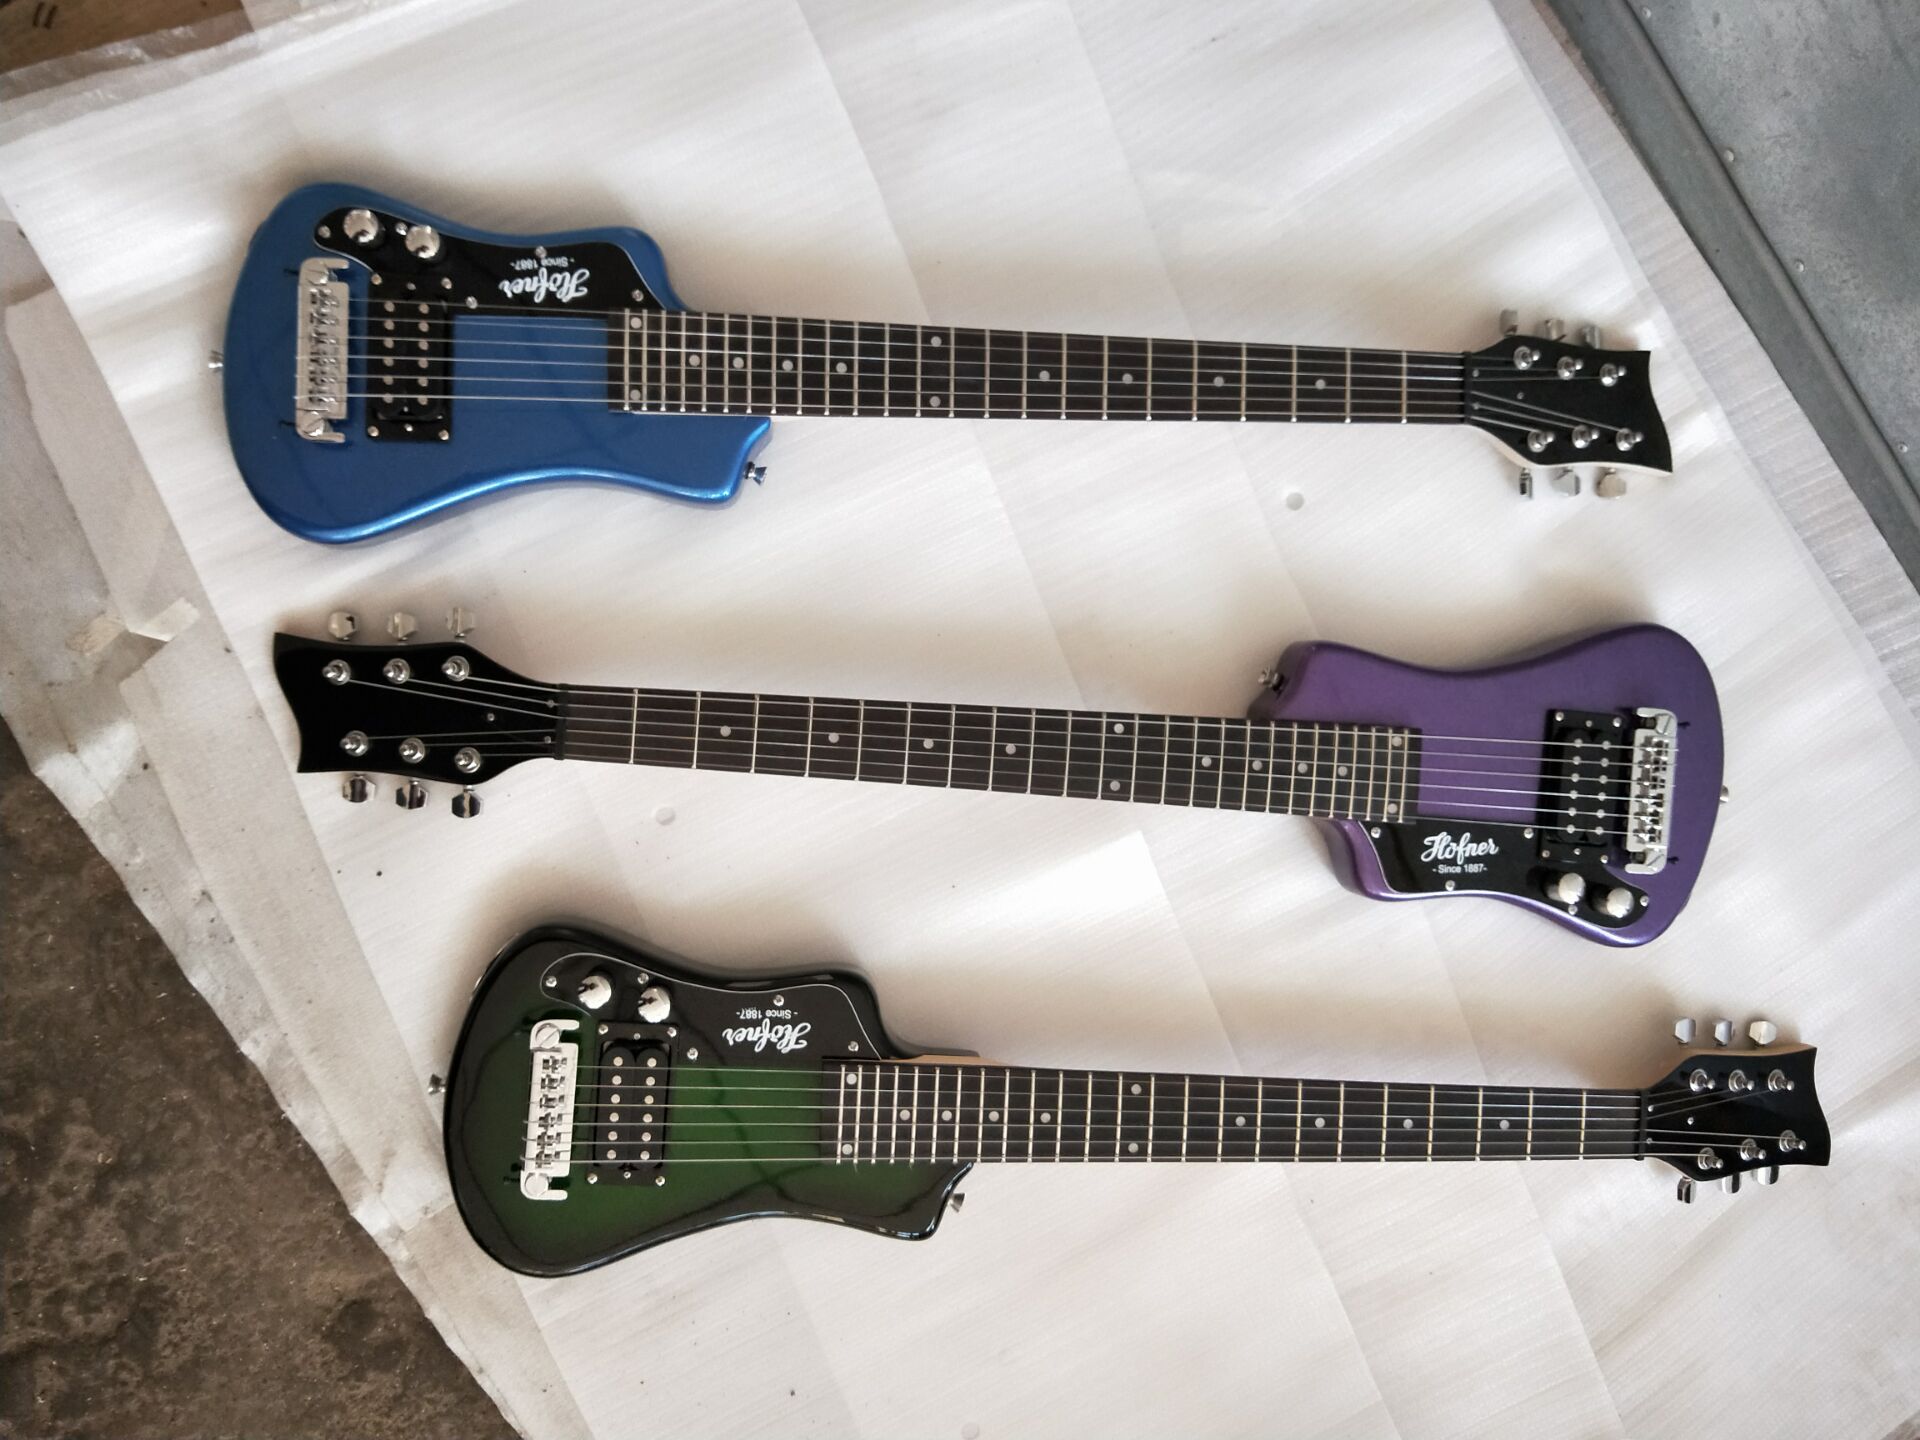 Leworęczny Multi Color Hof Shordy Travel Guitar Protable Mini Gitara Elektryczna z Bawełnianym Gig Bag, Warp Arround Tailpiece, Drop Shipping